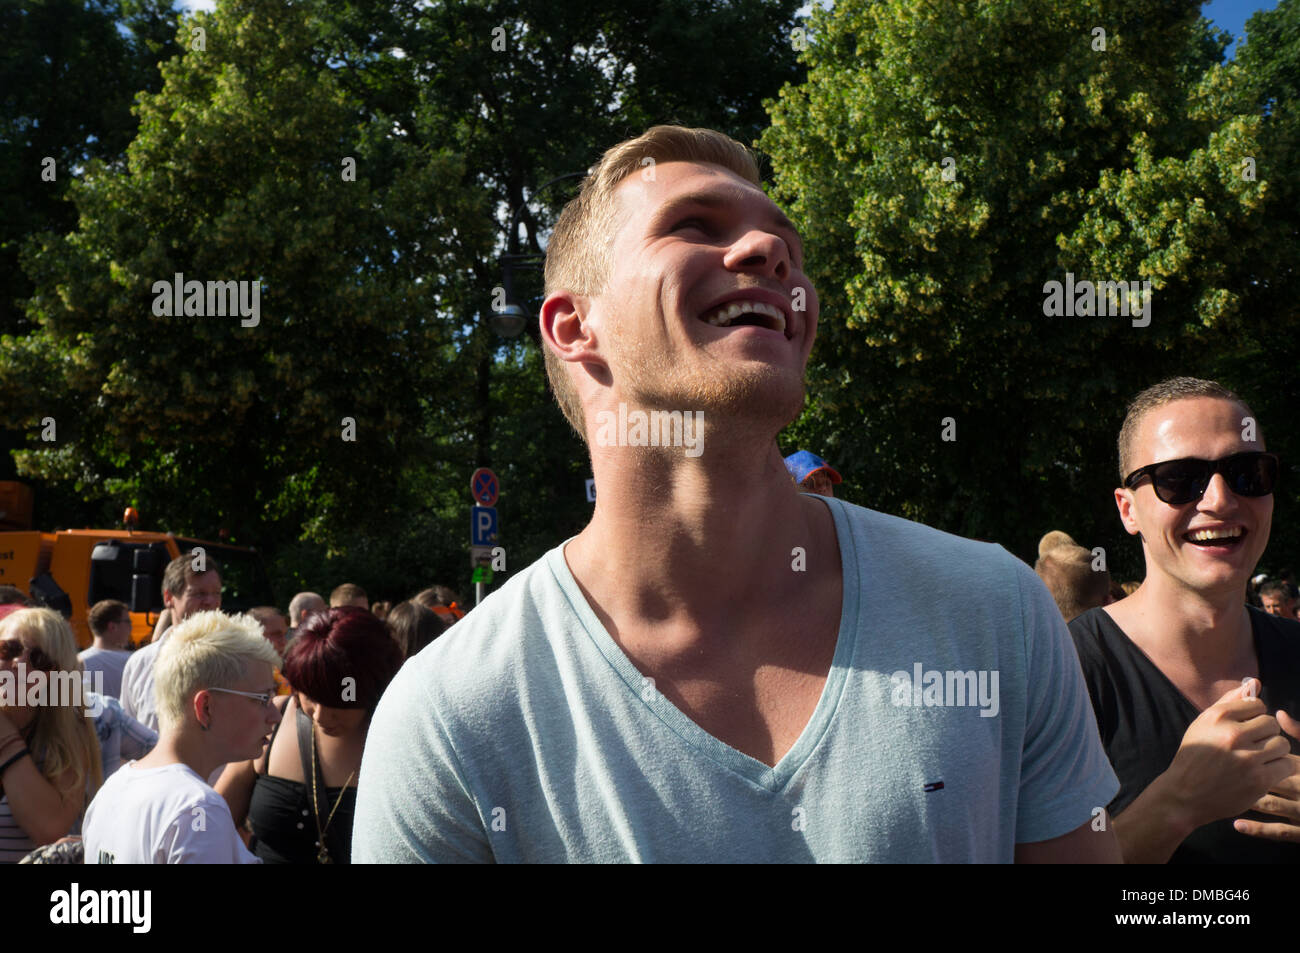 Homosexuelle Menschen und ihre Verbündeten versammeln sich anlässlich der jährlichen Christopher Street Day (Pride Parade) in Berlin, Deutschland Stockfoto